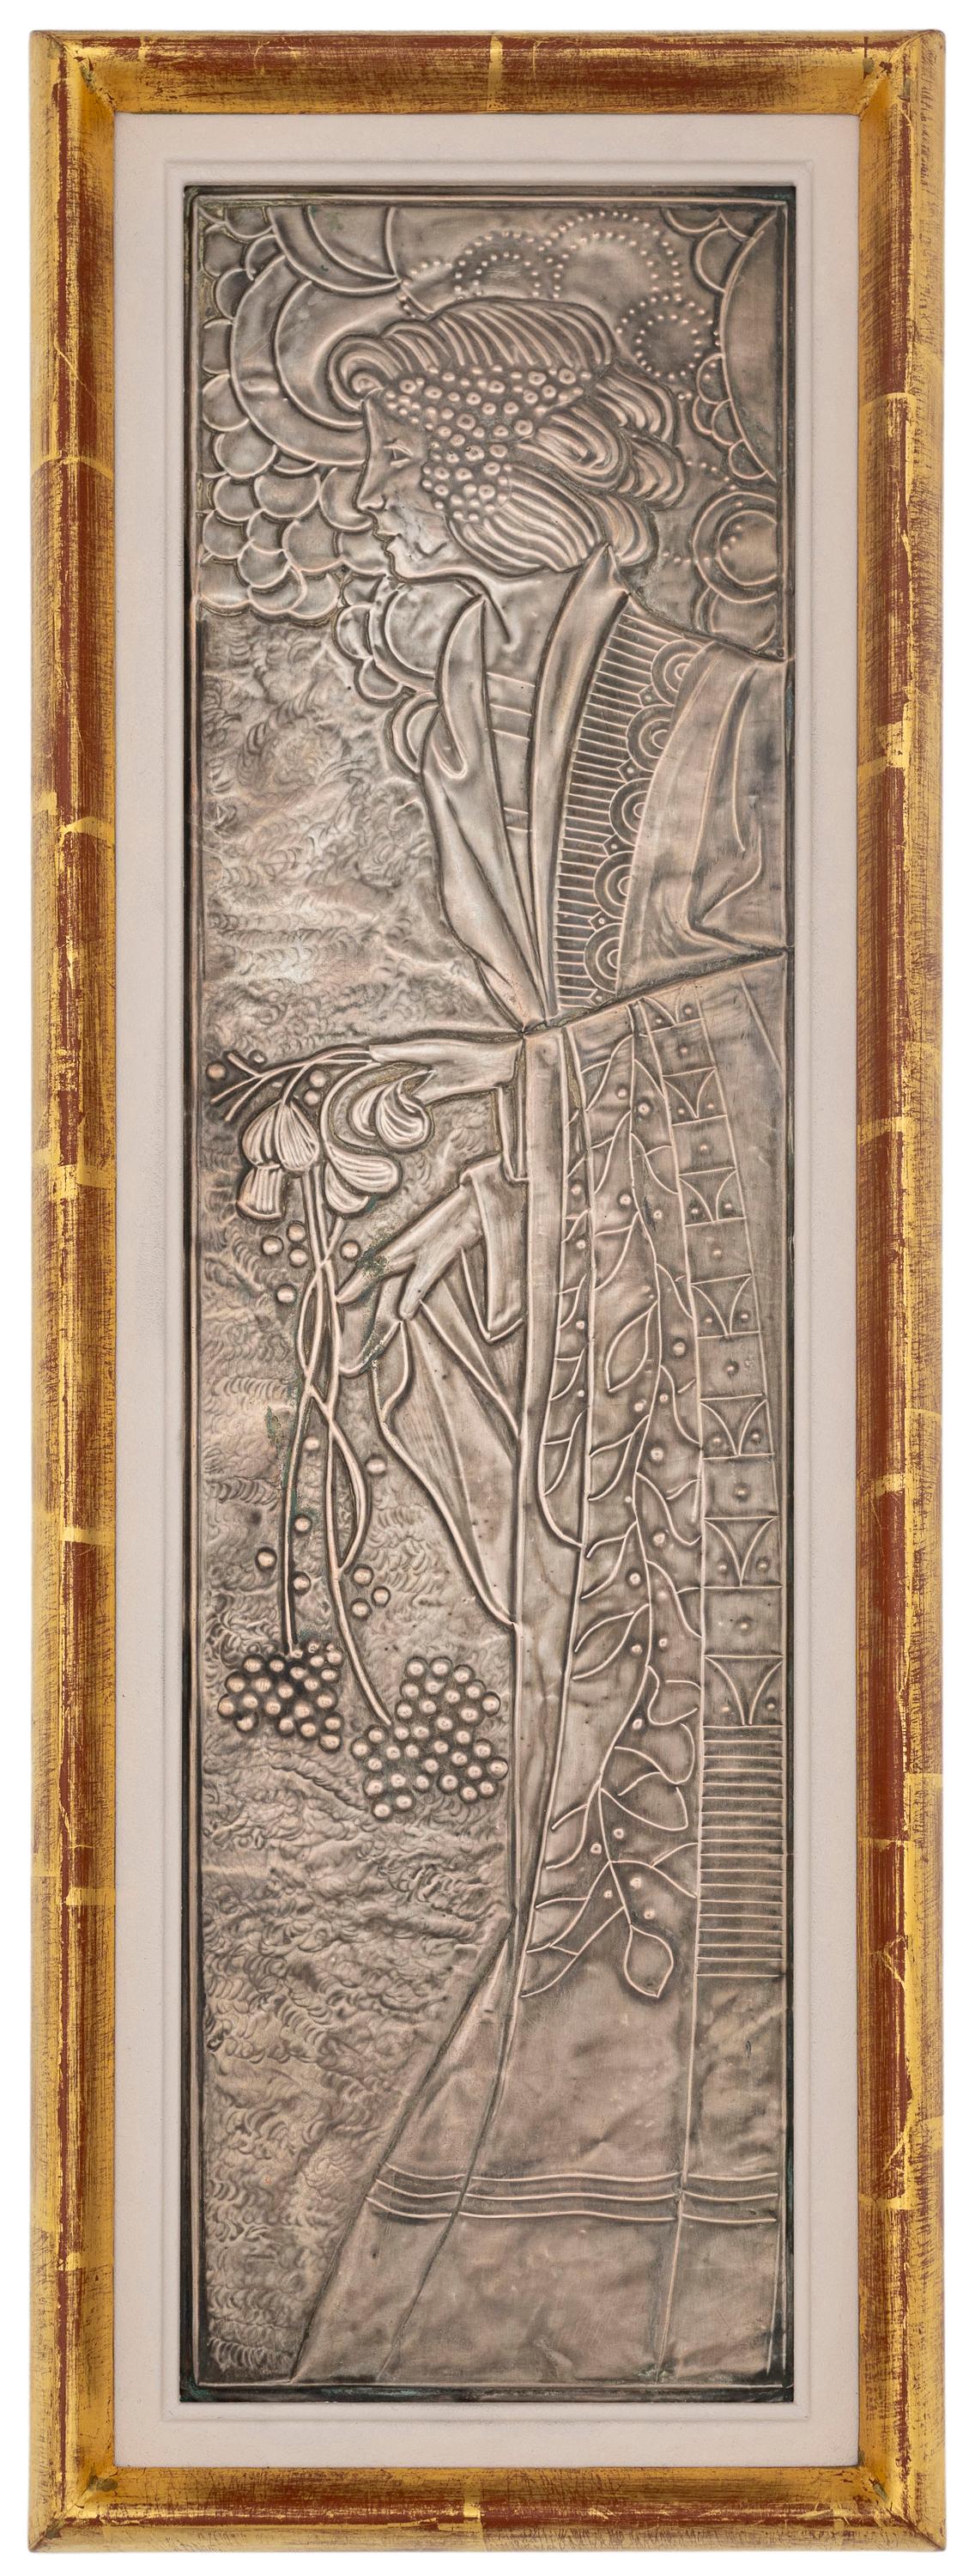 Reliefpaar, Dionysos und Demeter, Georg Klimt (1867 - 1931), patiniertes Kupfer, versilbert, um 1900

Georg Klimts exzellentes handwerkliches Können in der Metallbildhauerei wurde von seinen Zeitgenossen, allen voran von seinem älteren Bruder Gustav